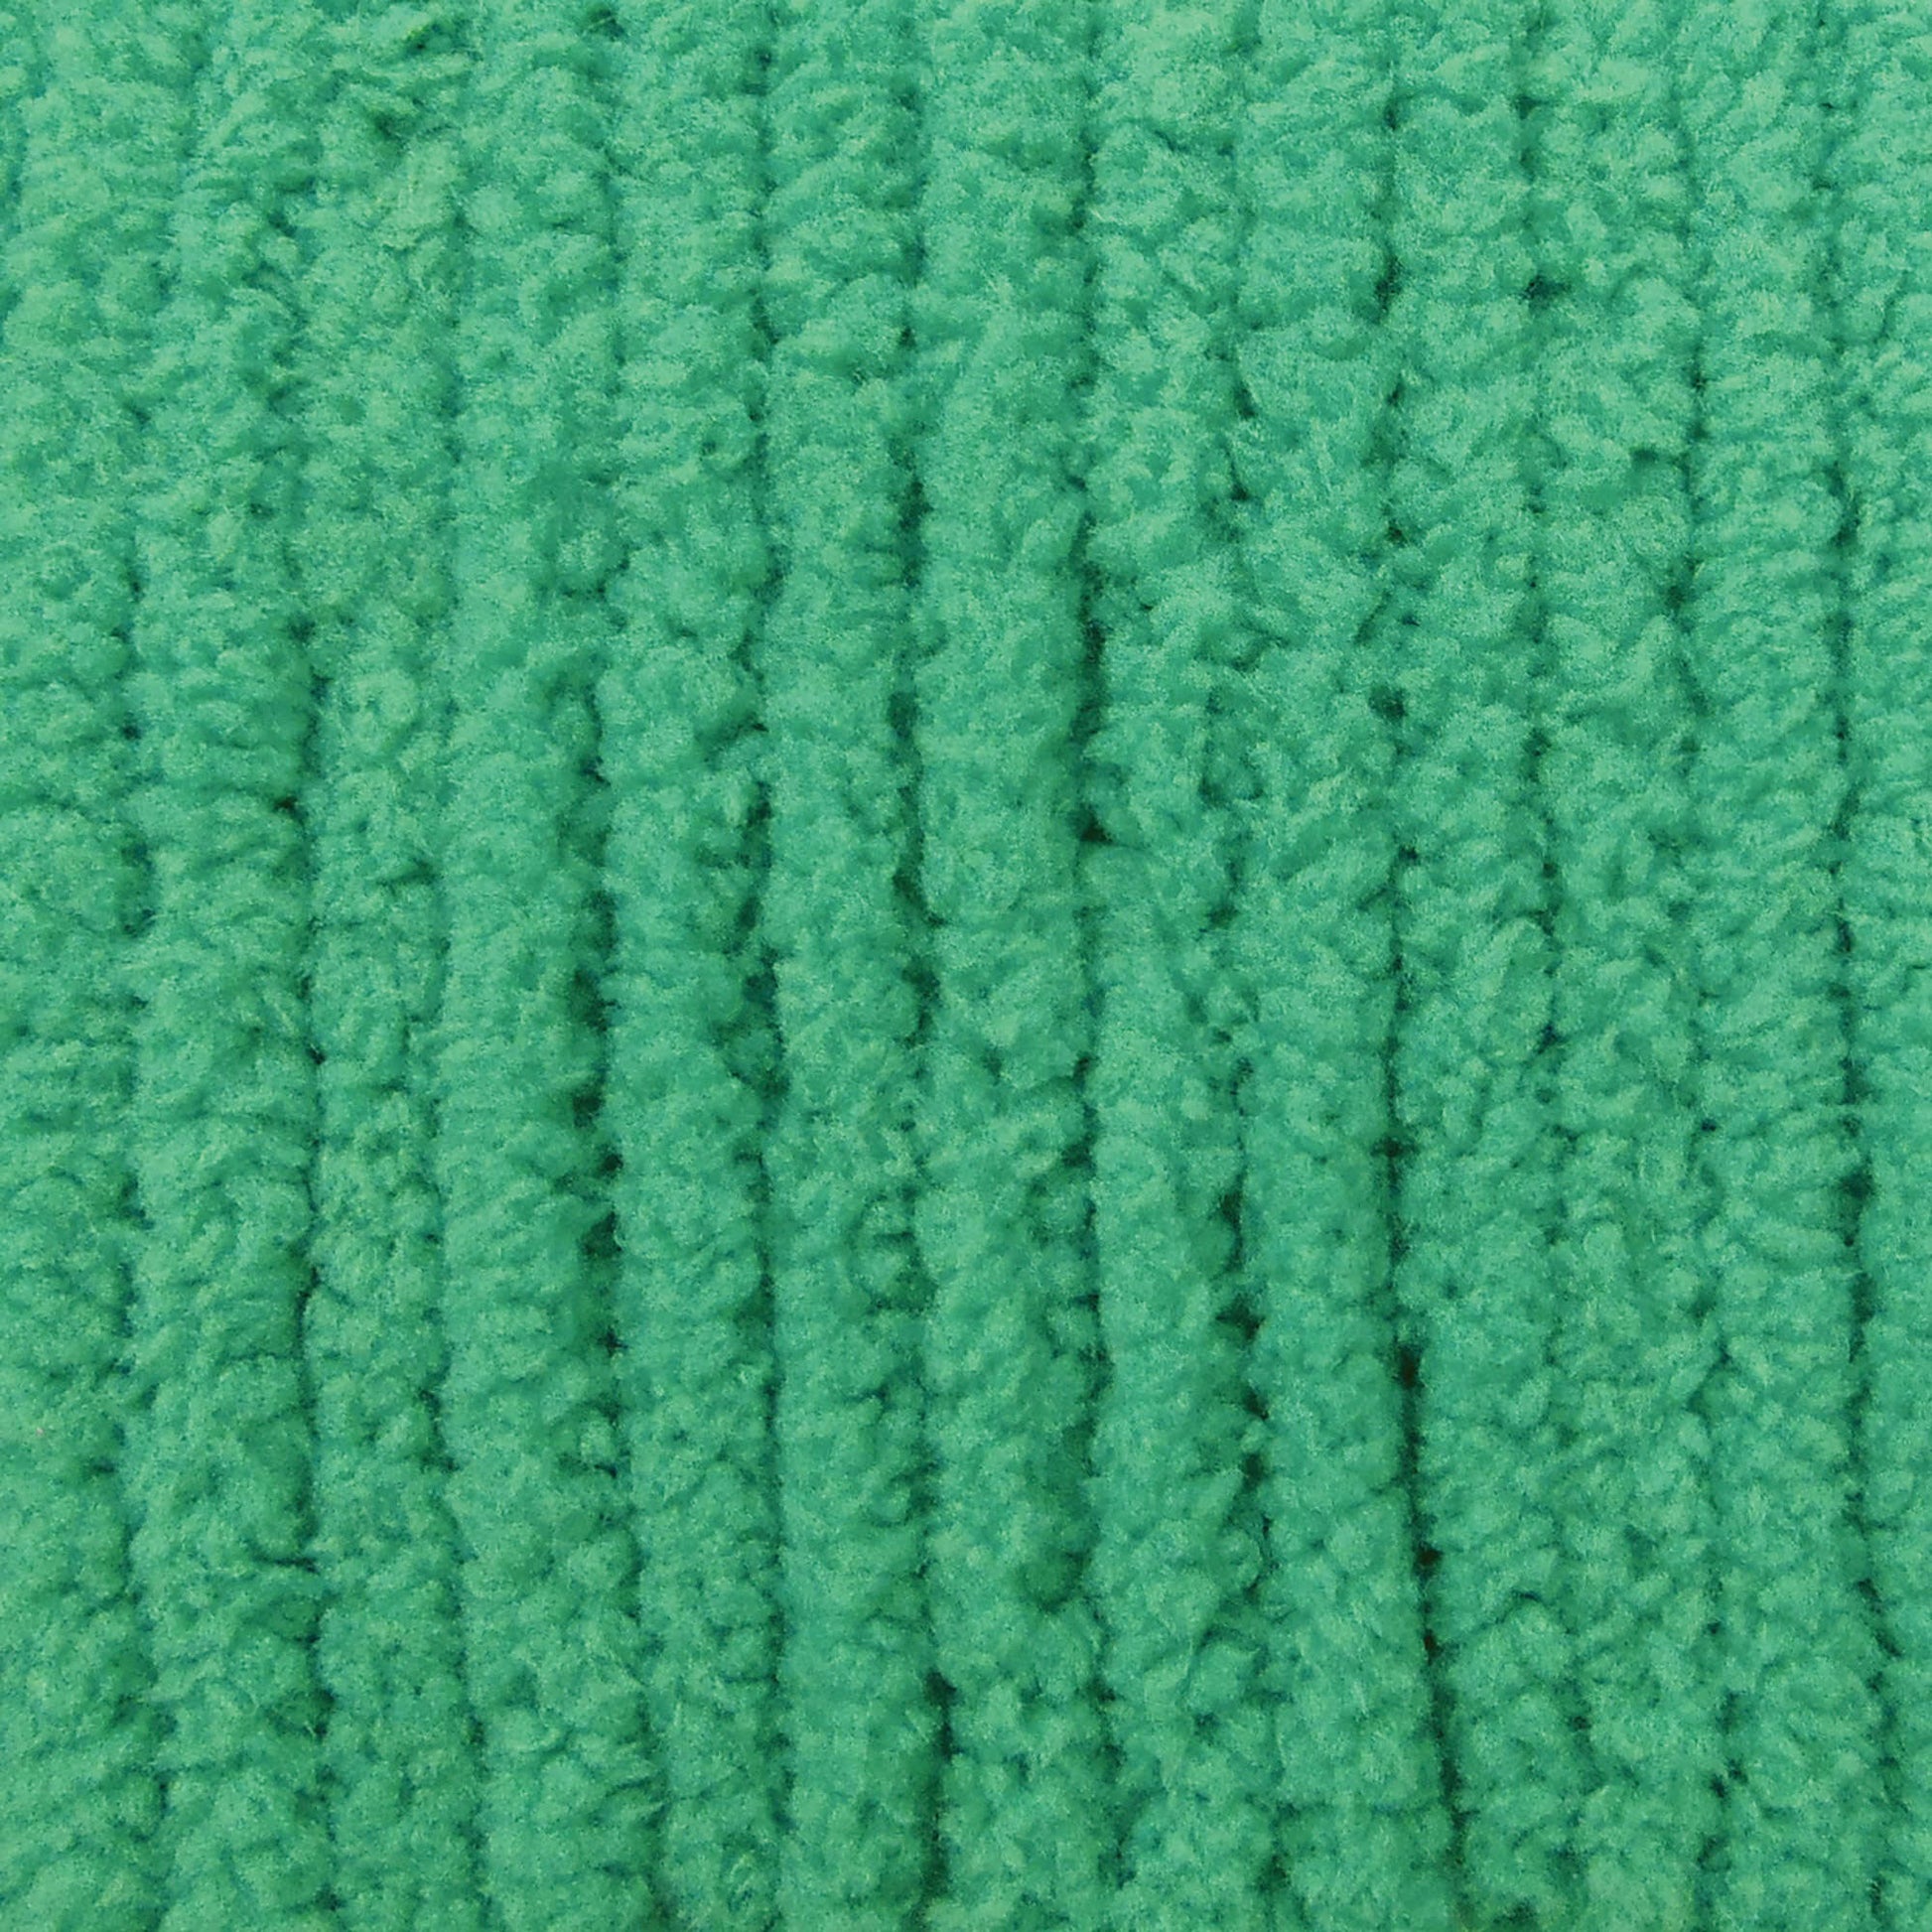 Bernat Blanket Brights Yarn (300g/10.5oz) GoGo Green